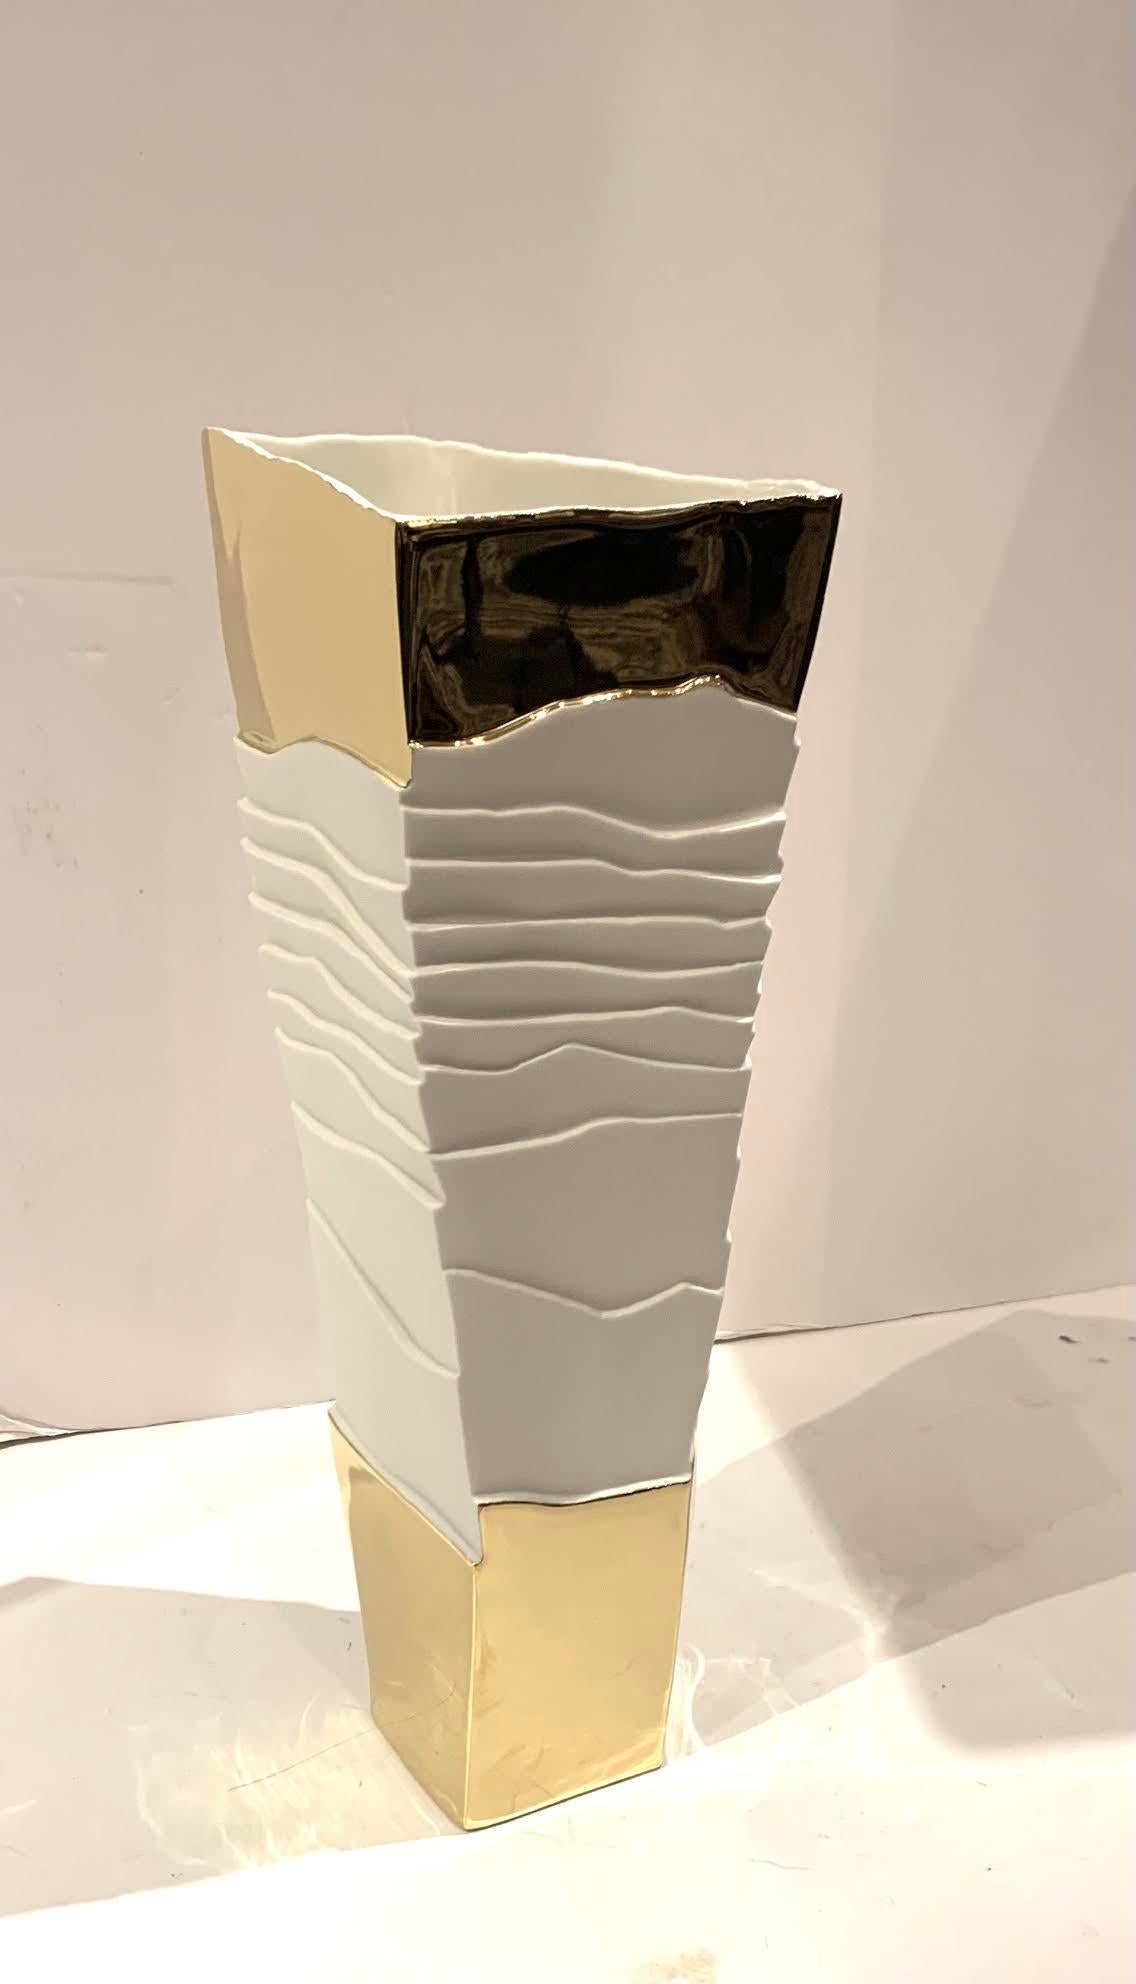 Vase en porcelaine blanche contemporain italien fait à la main avec un design cubiste.
Motif de nervures blanches ondulées et dessus et dessous en or 22K lisse.